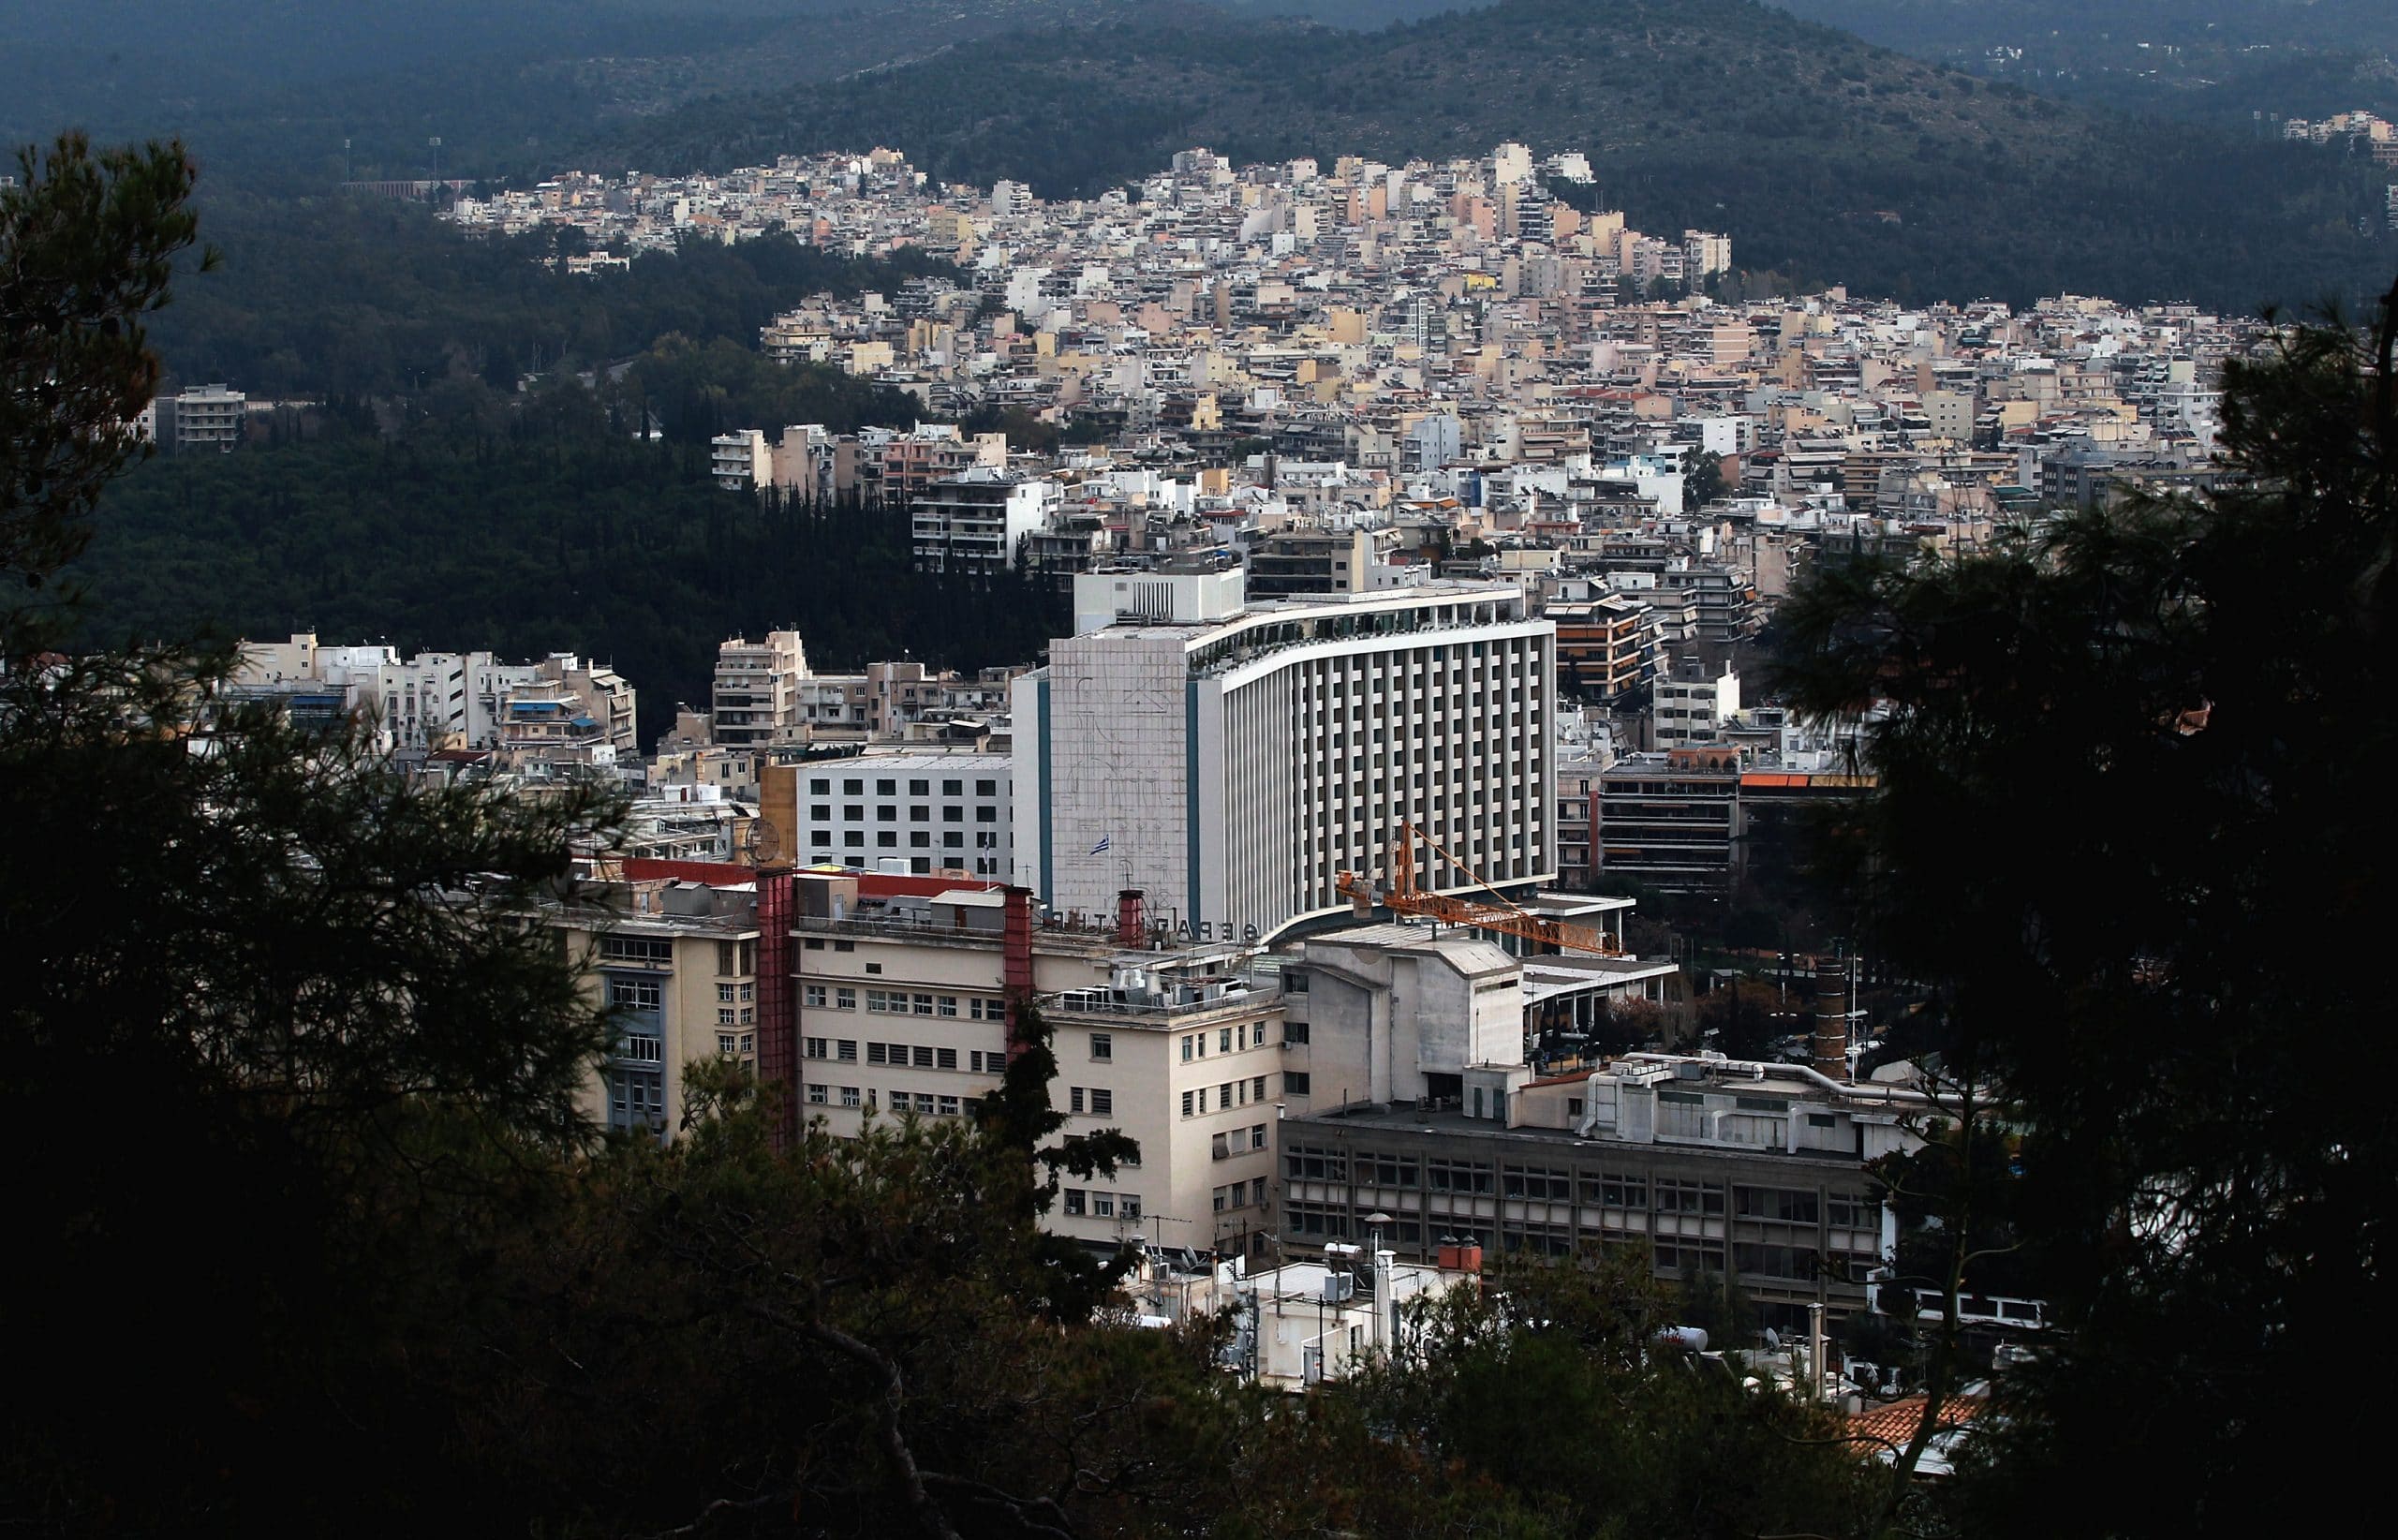 Εξωτερική άποψη του ξενοδοχείου "Hilton" στην Αθήνα,